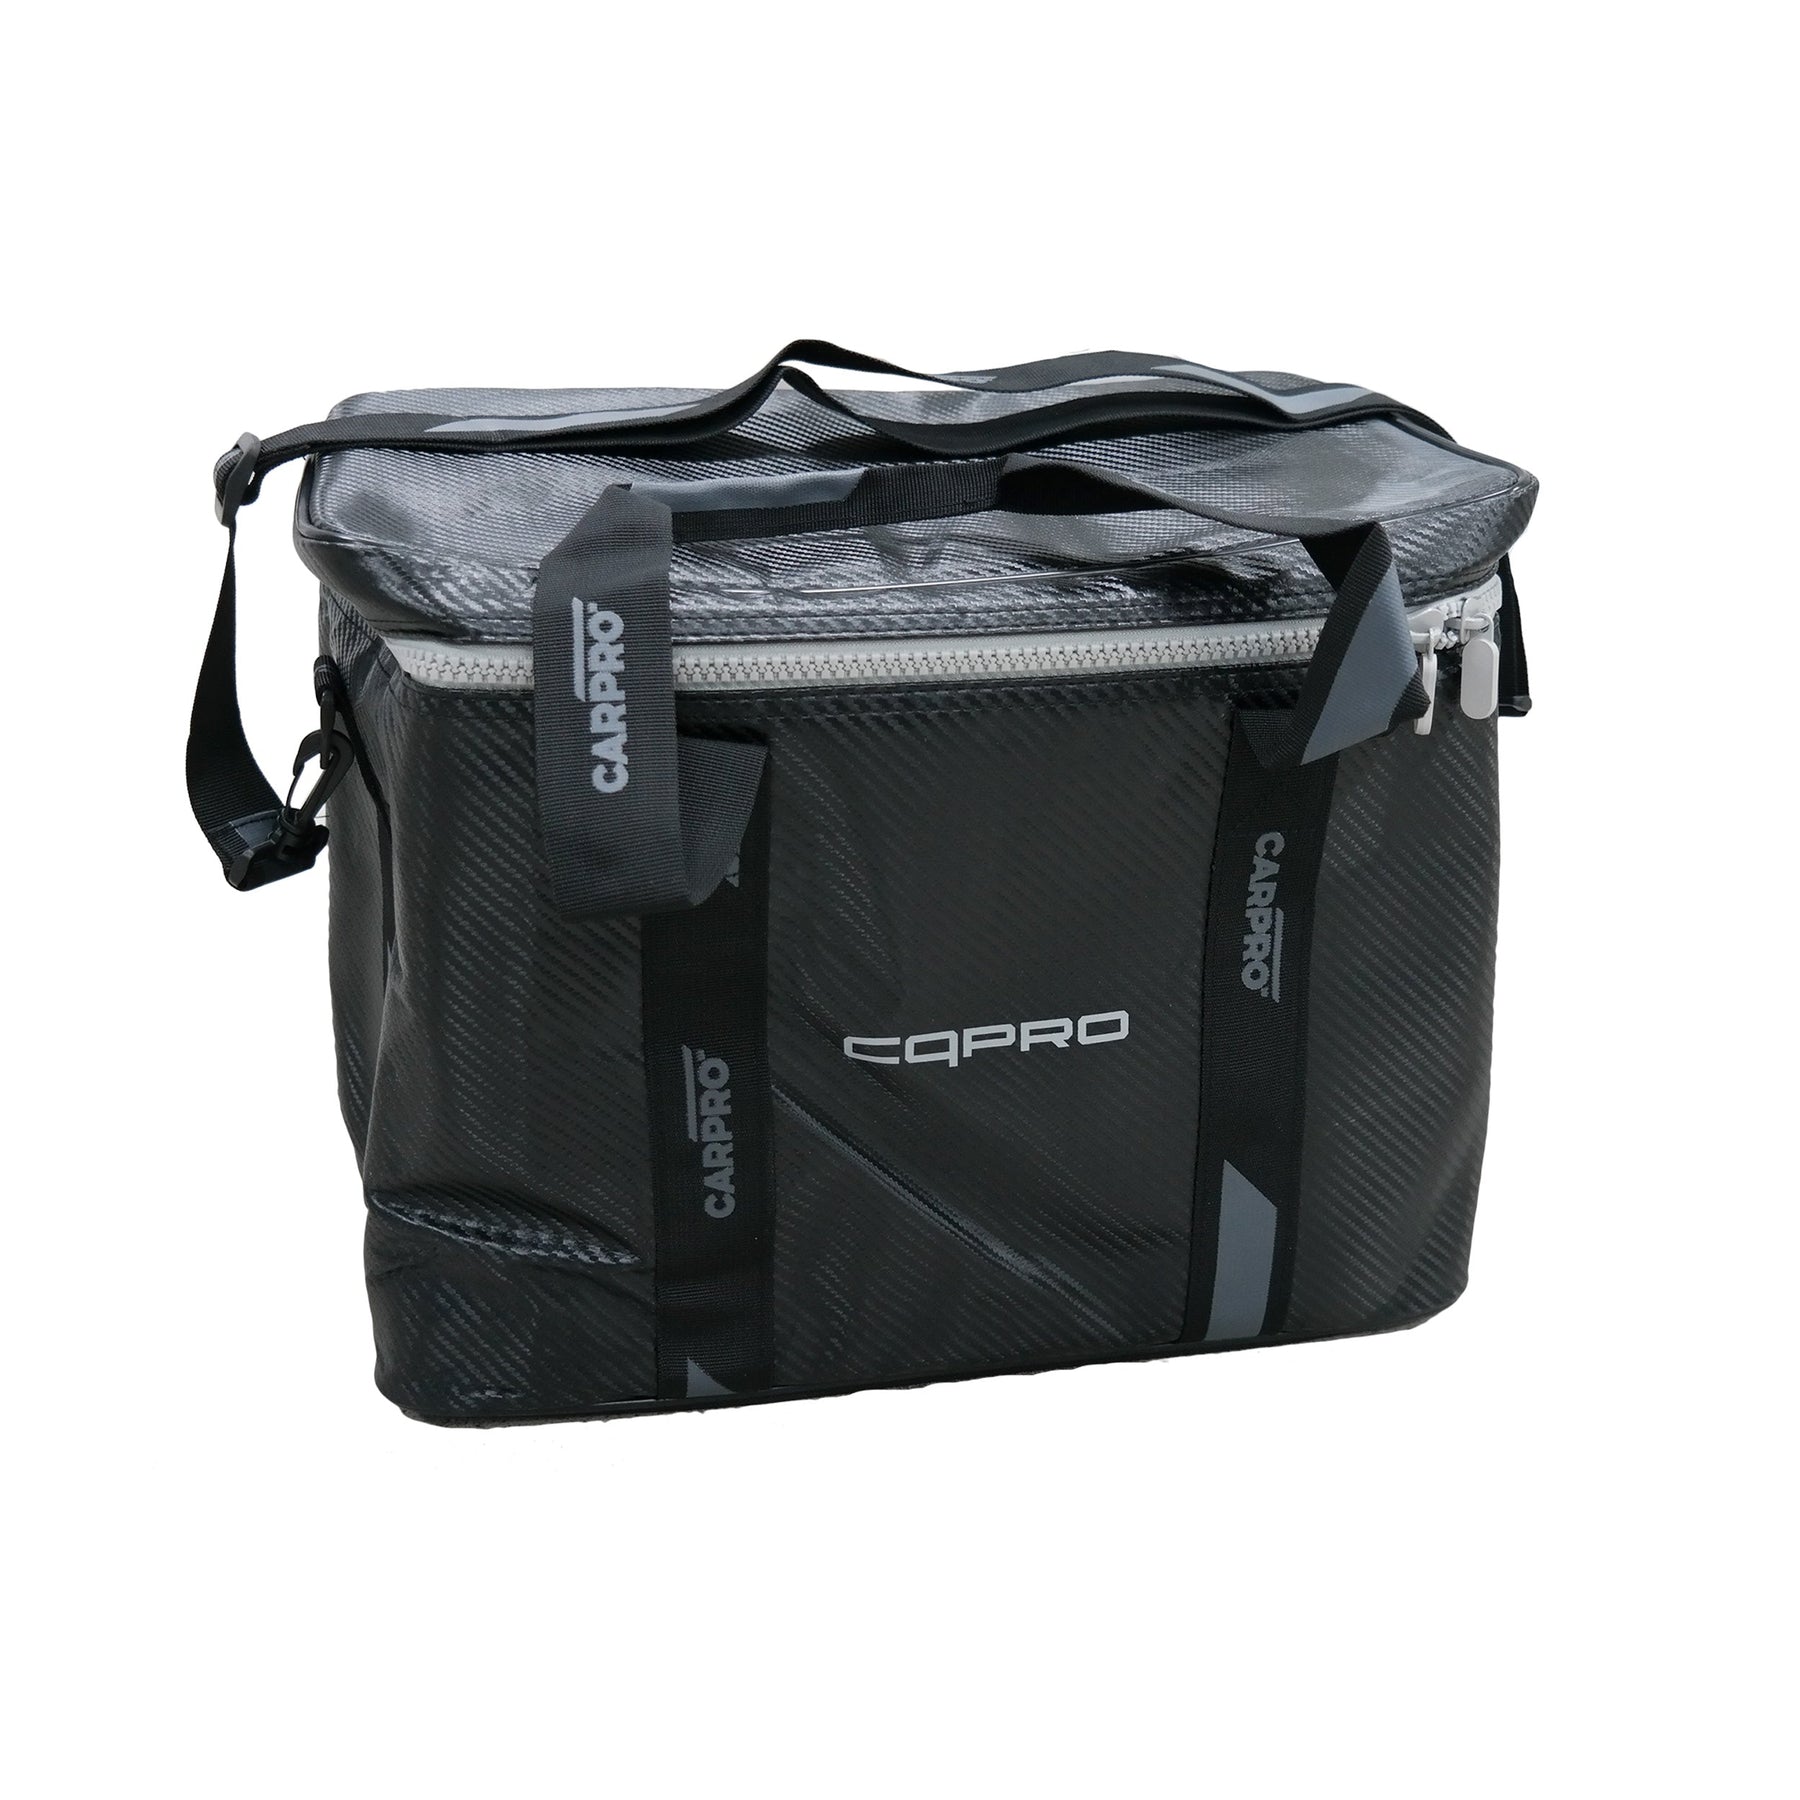 CARPRO CQPRO Maintainence Bag Kit